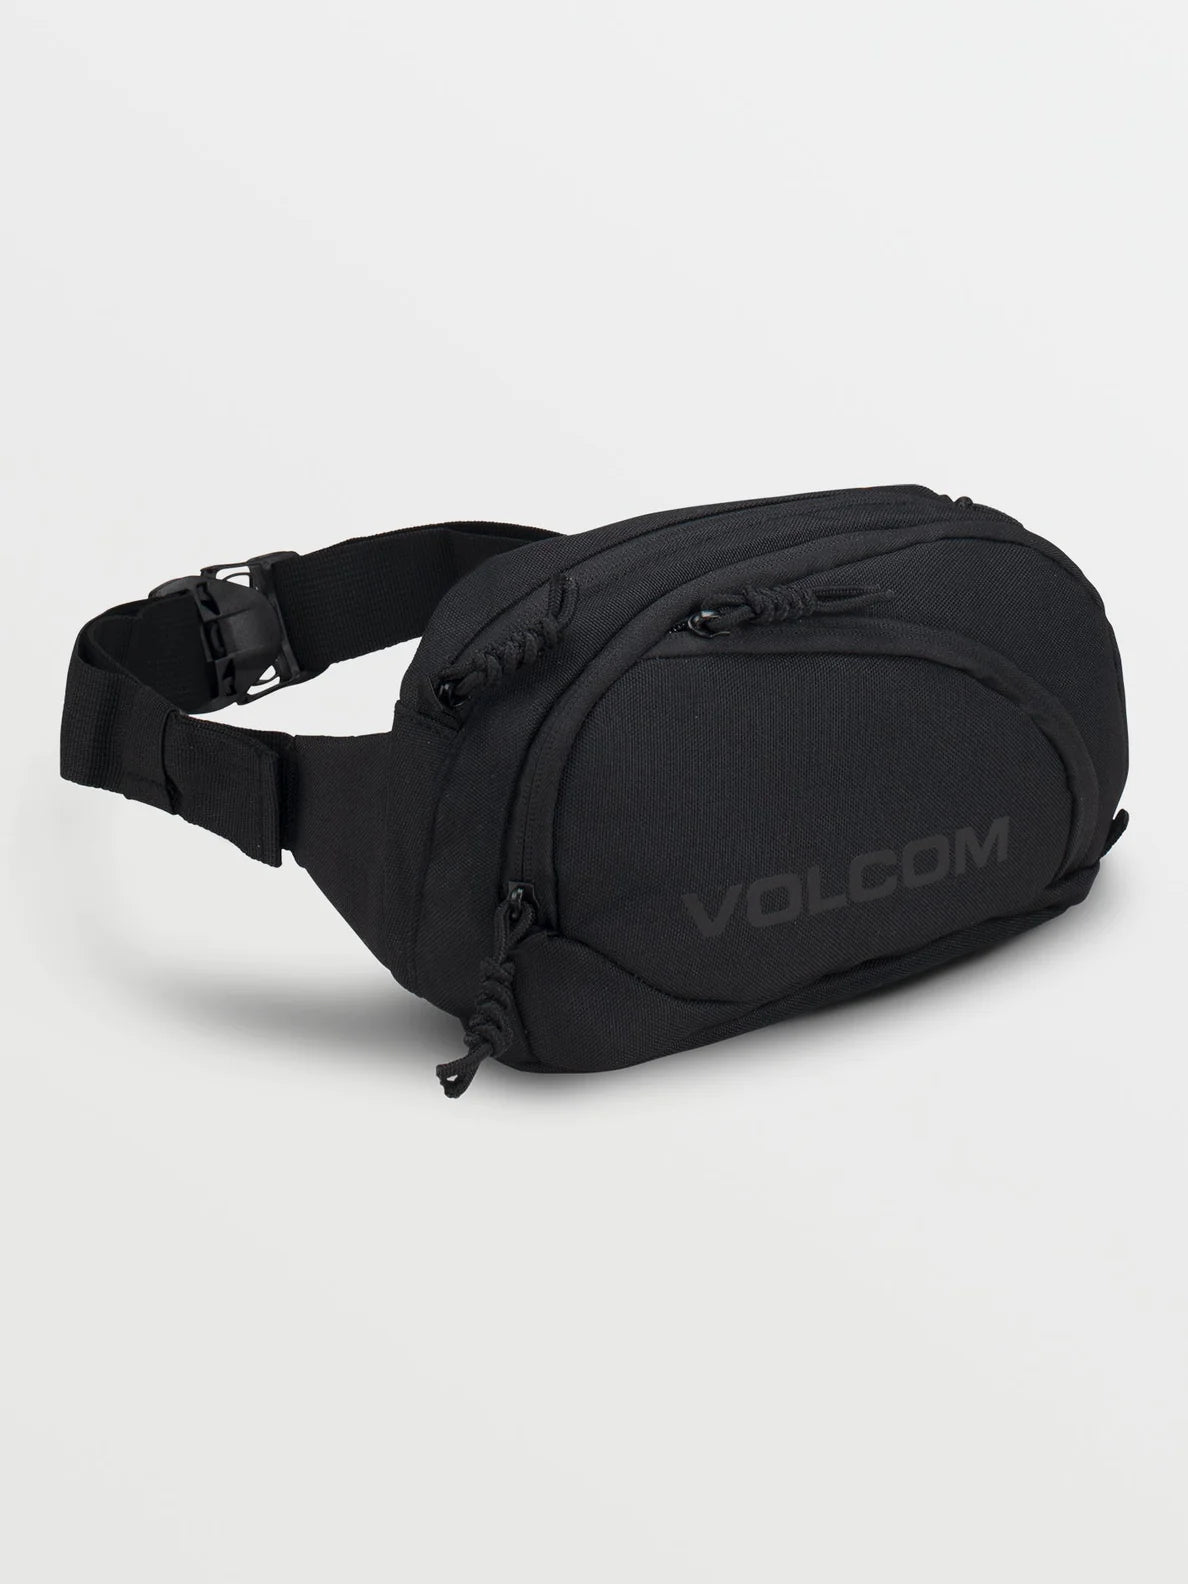 Volcom WAISTED PACK Tasche Bag - BLack